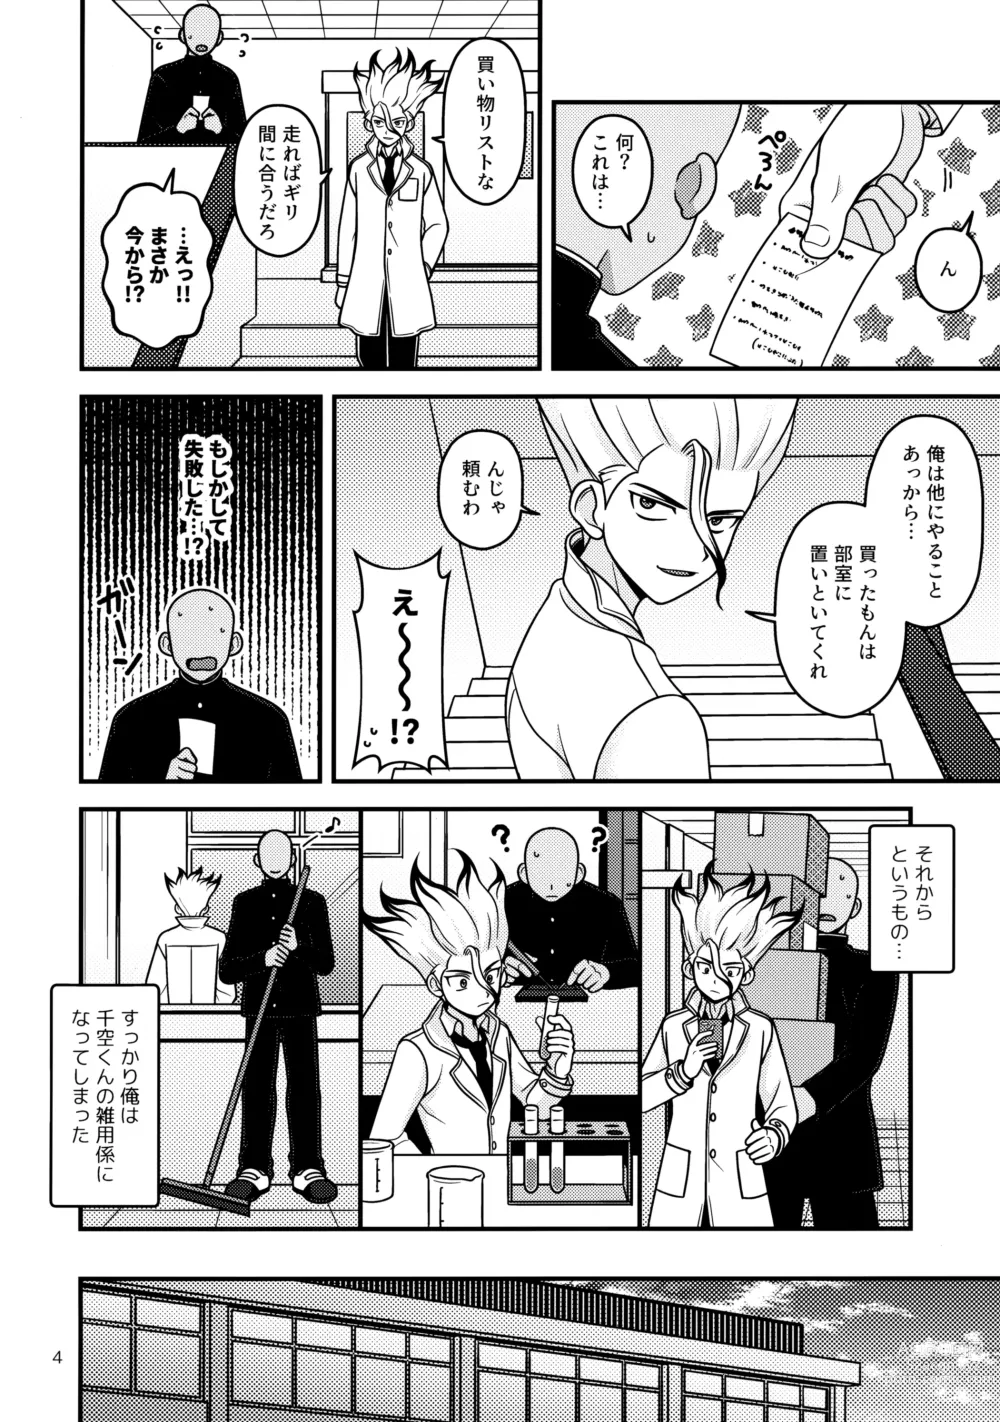 Page 3 of doujinshi Houkago no Daini Jikkenshitsu 2